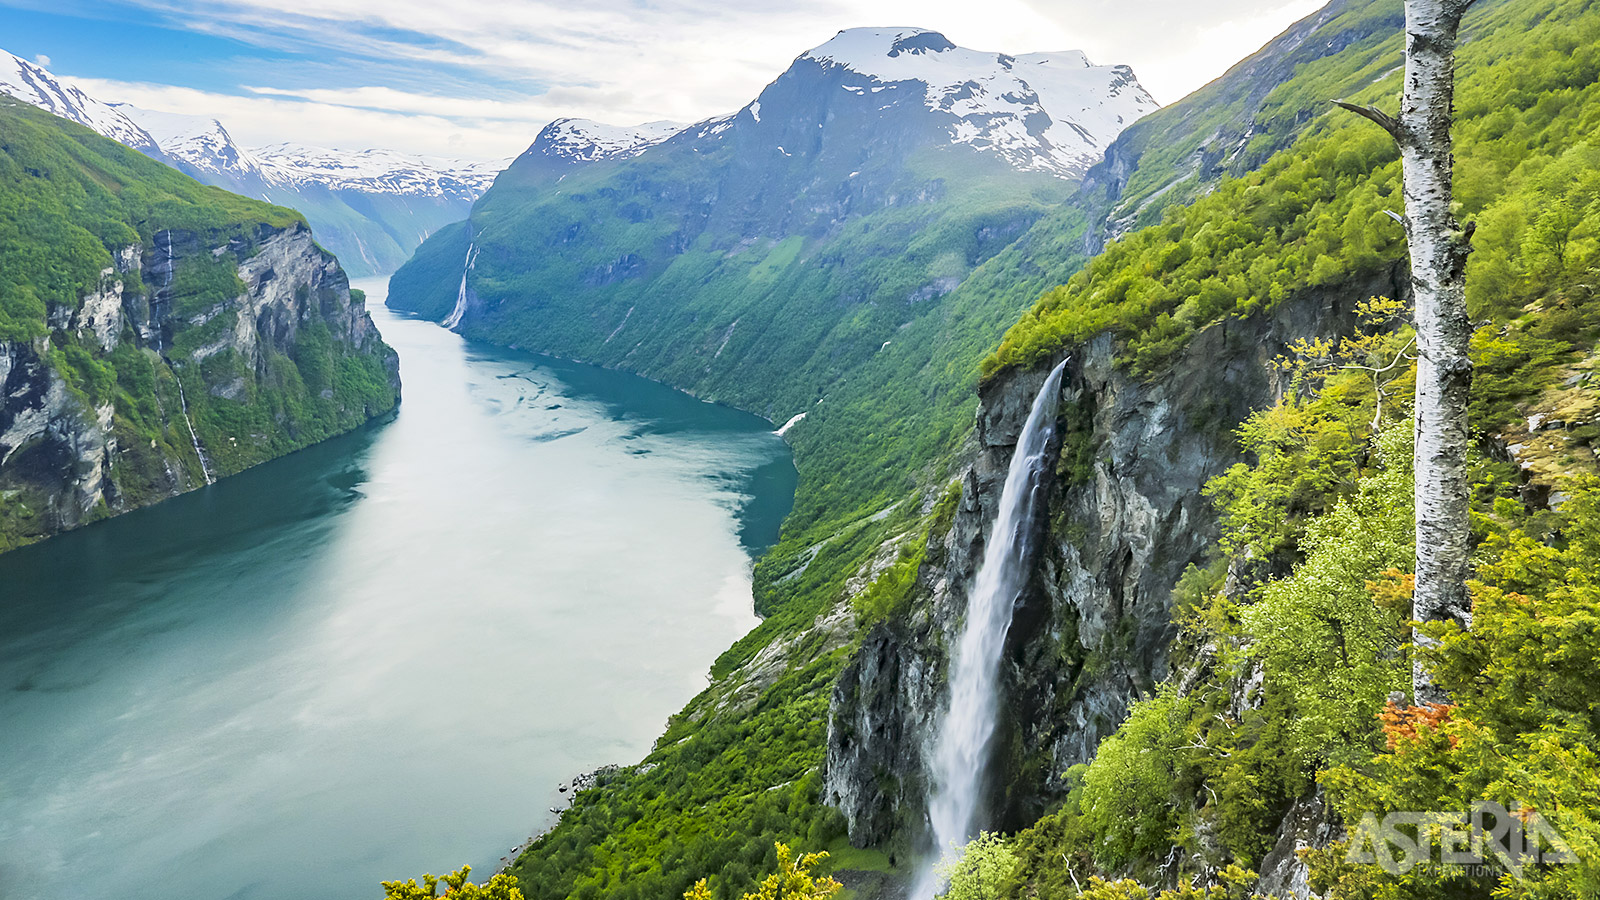 Met zijn natuurlijke schoonheid mag het geen verrassing zijn dat Geirangerfjord frequent lijstjes met meest spectaculaire plekken ter wereld voorkomt